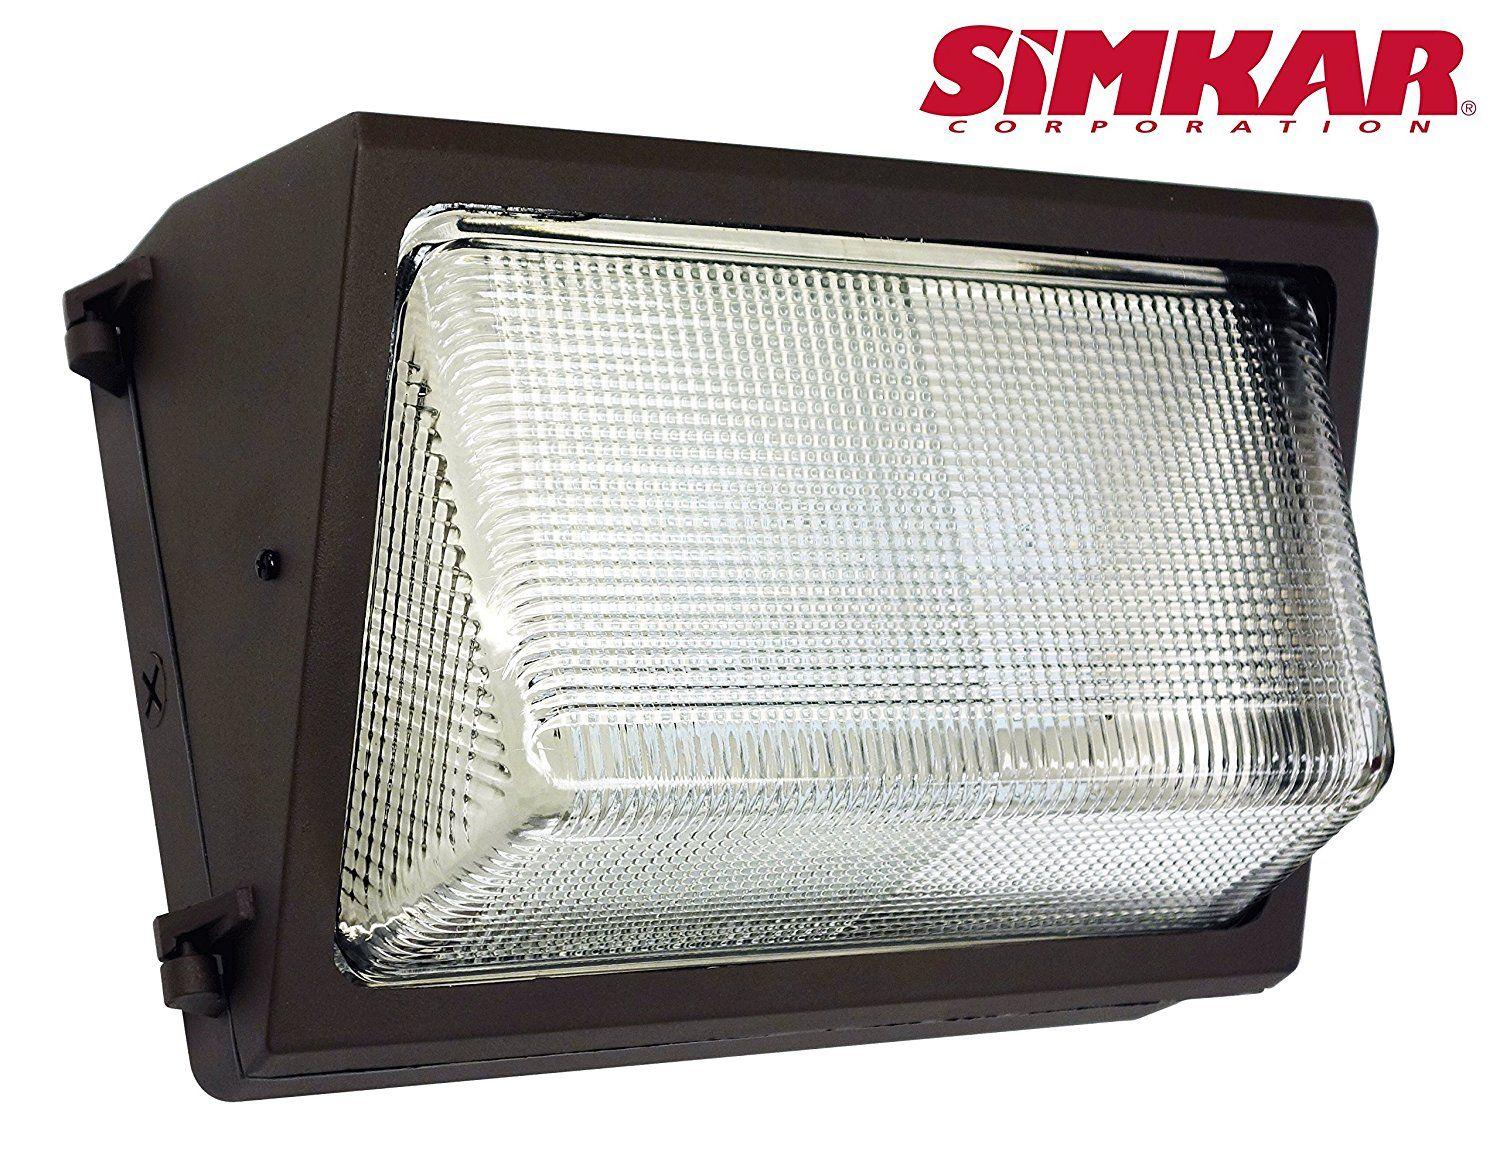 Simkar Logo - Cheap Simkar Lighting, find Simkar Lighting deals on line at Alibaba.com